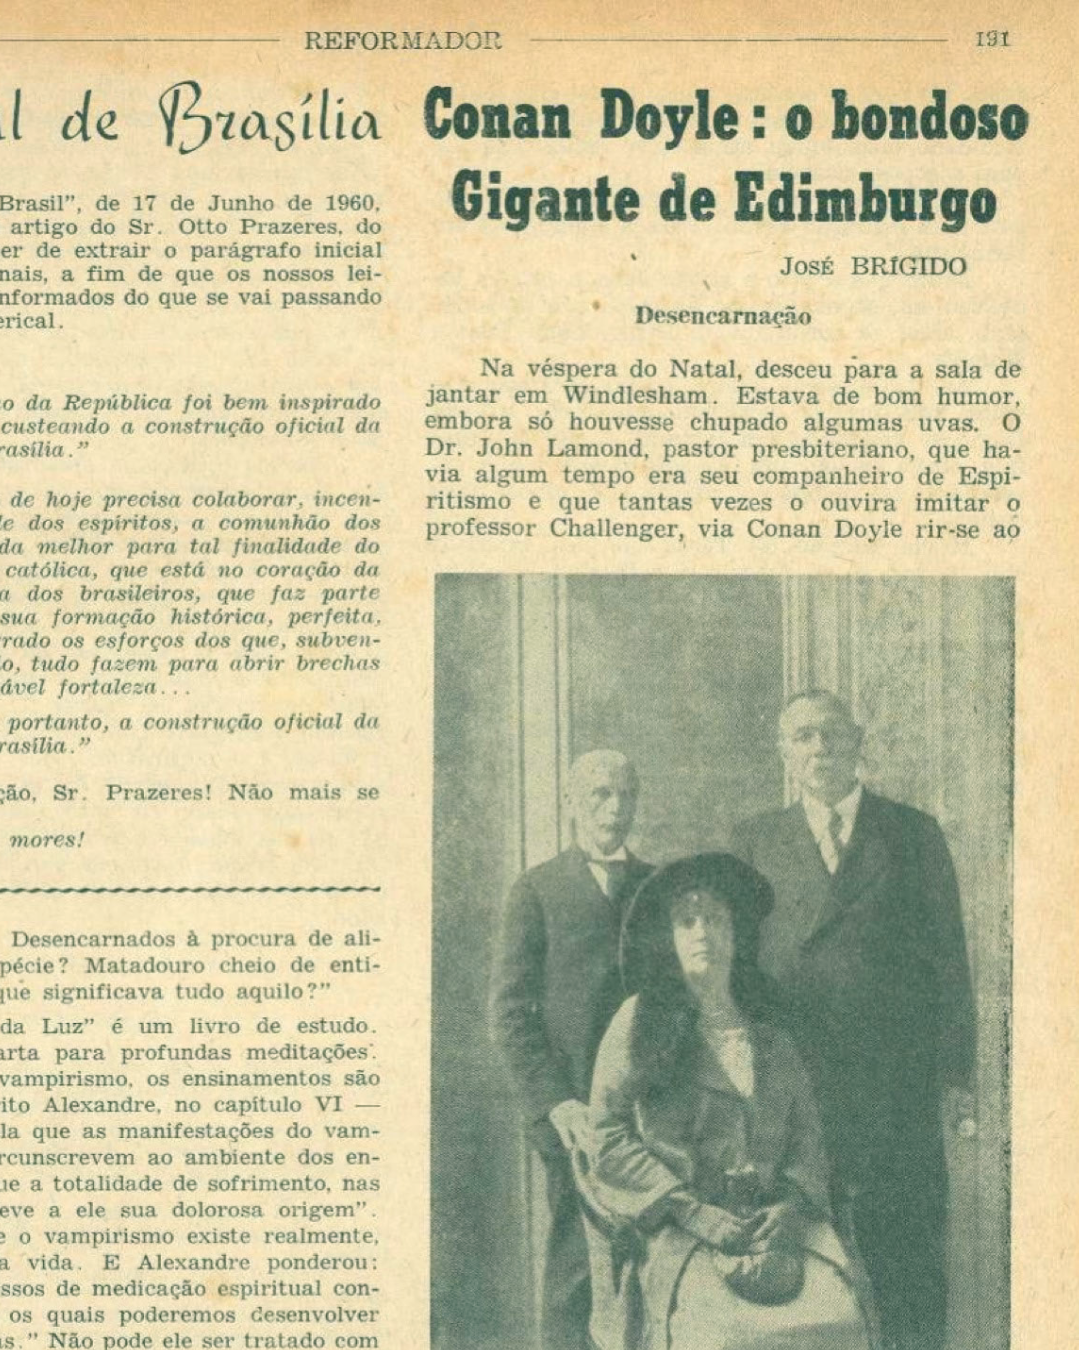 Recorte da página do periódico Reformador, editado pela Federação Espírita Brasileira. Na imagem há um título que diz 